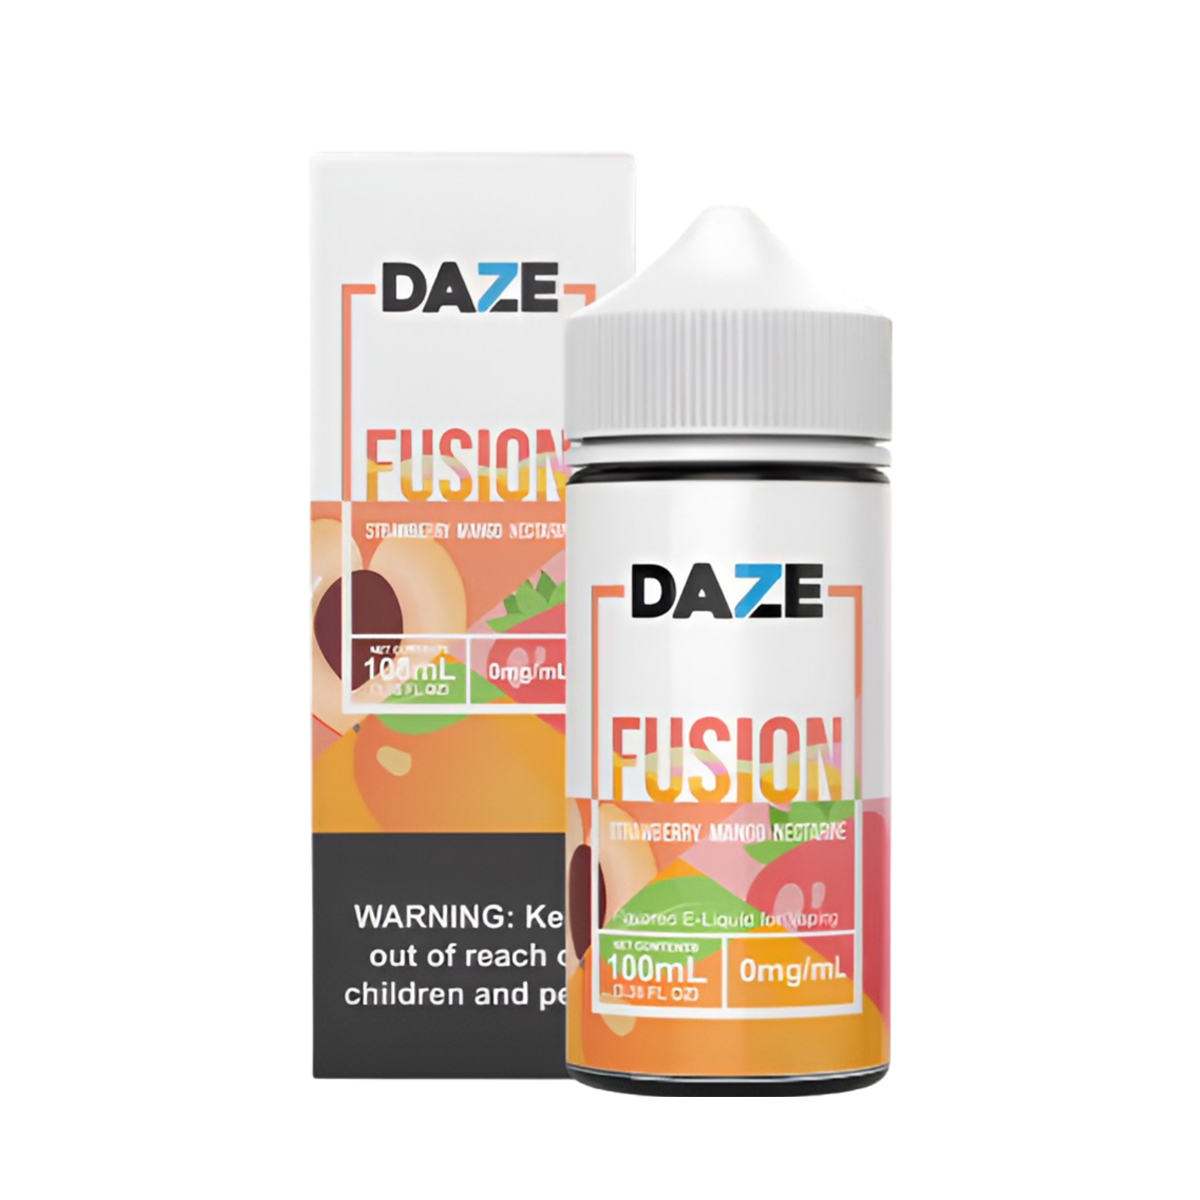 7 Daze Fusion Freebase Vape Juice 0 Mg 100 ML Strawberry Mango Nectarine